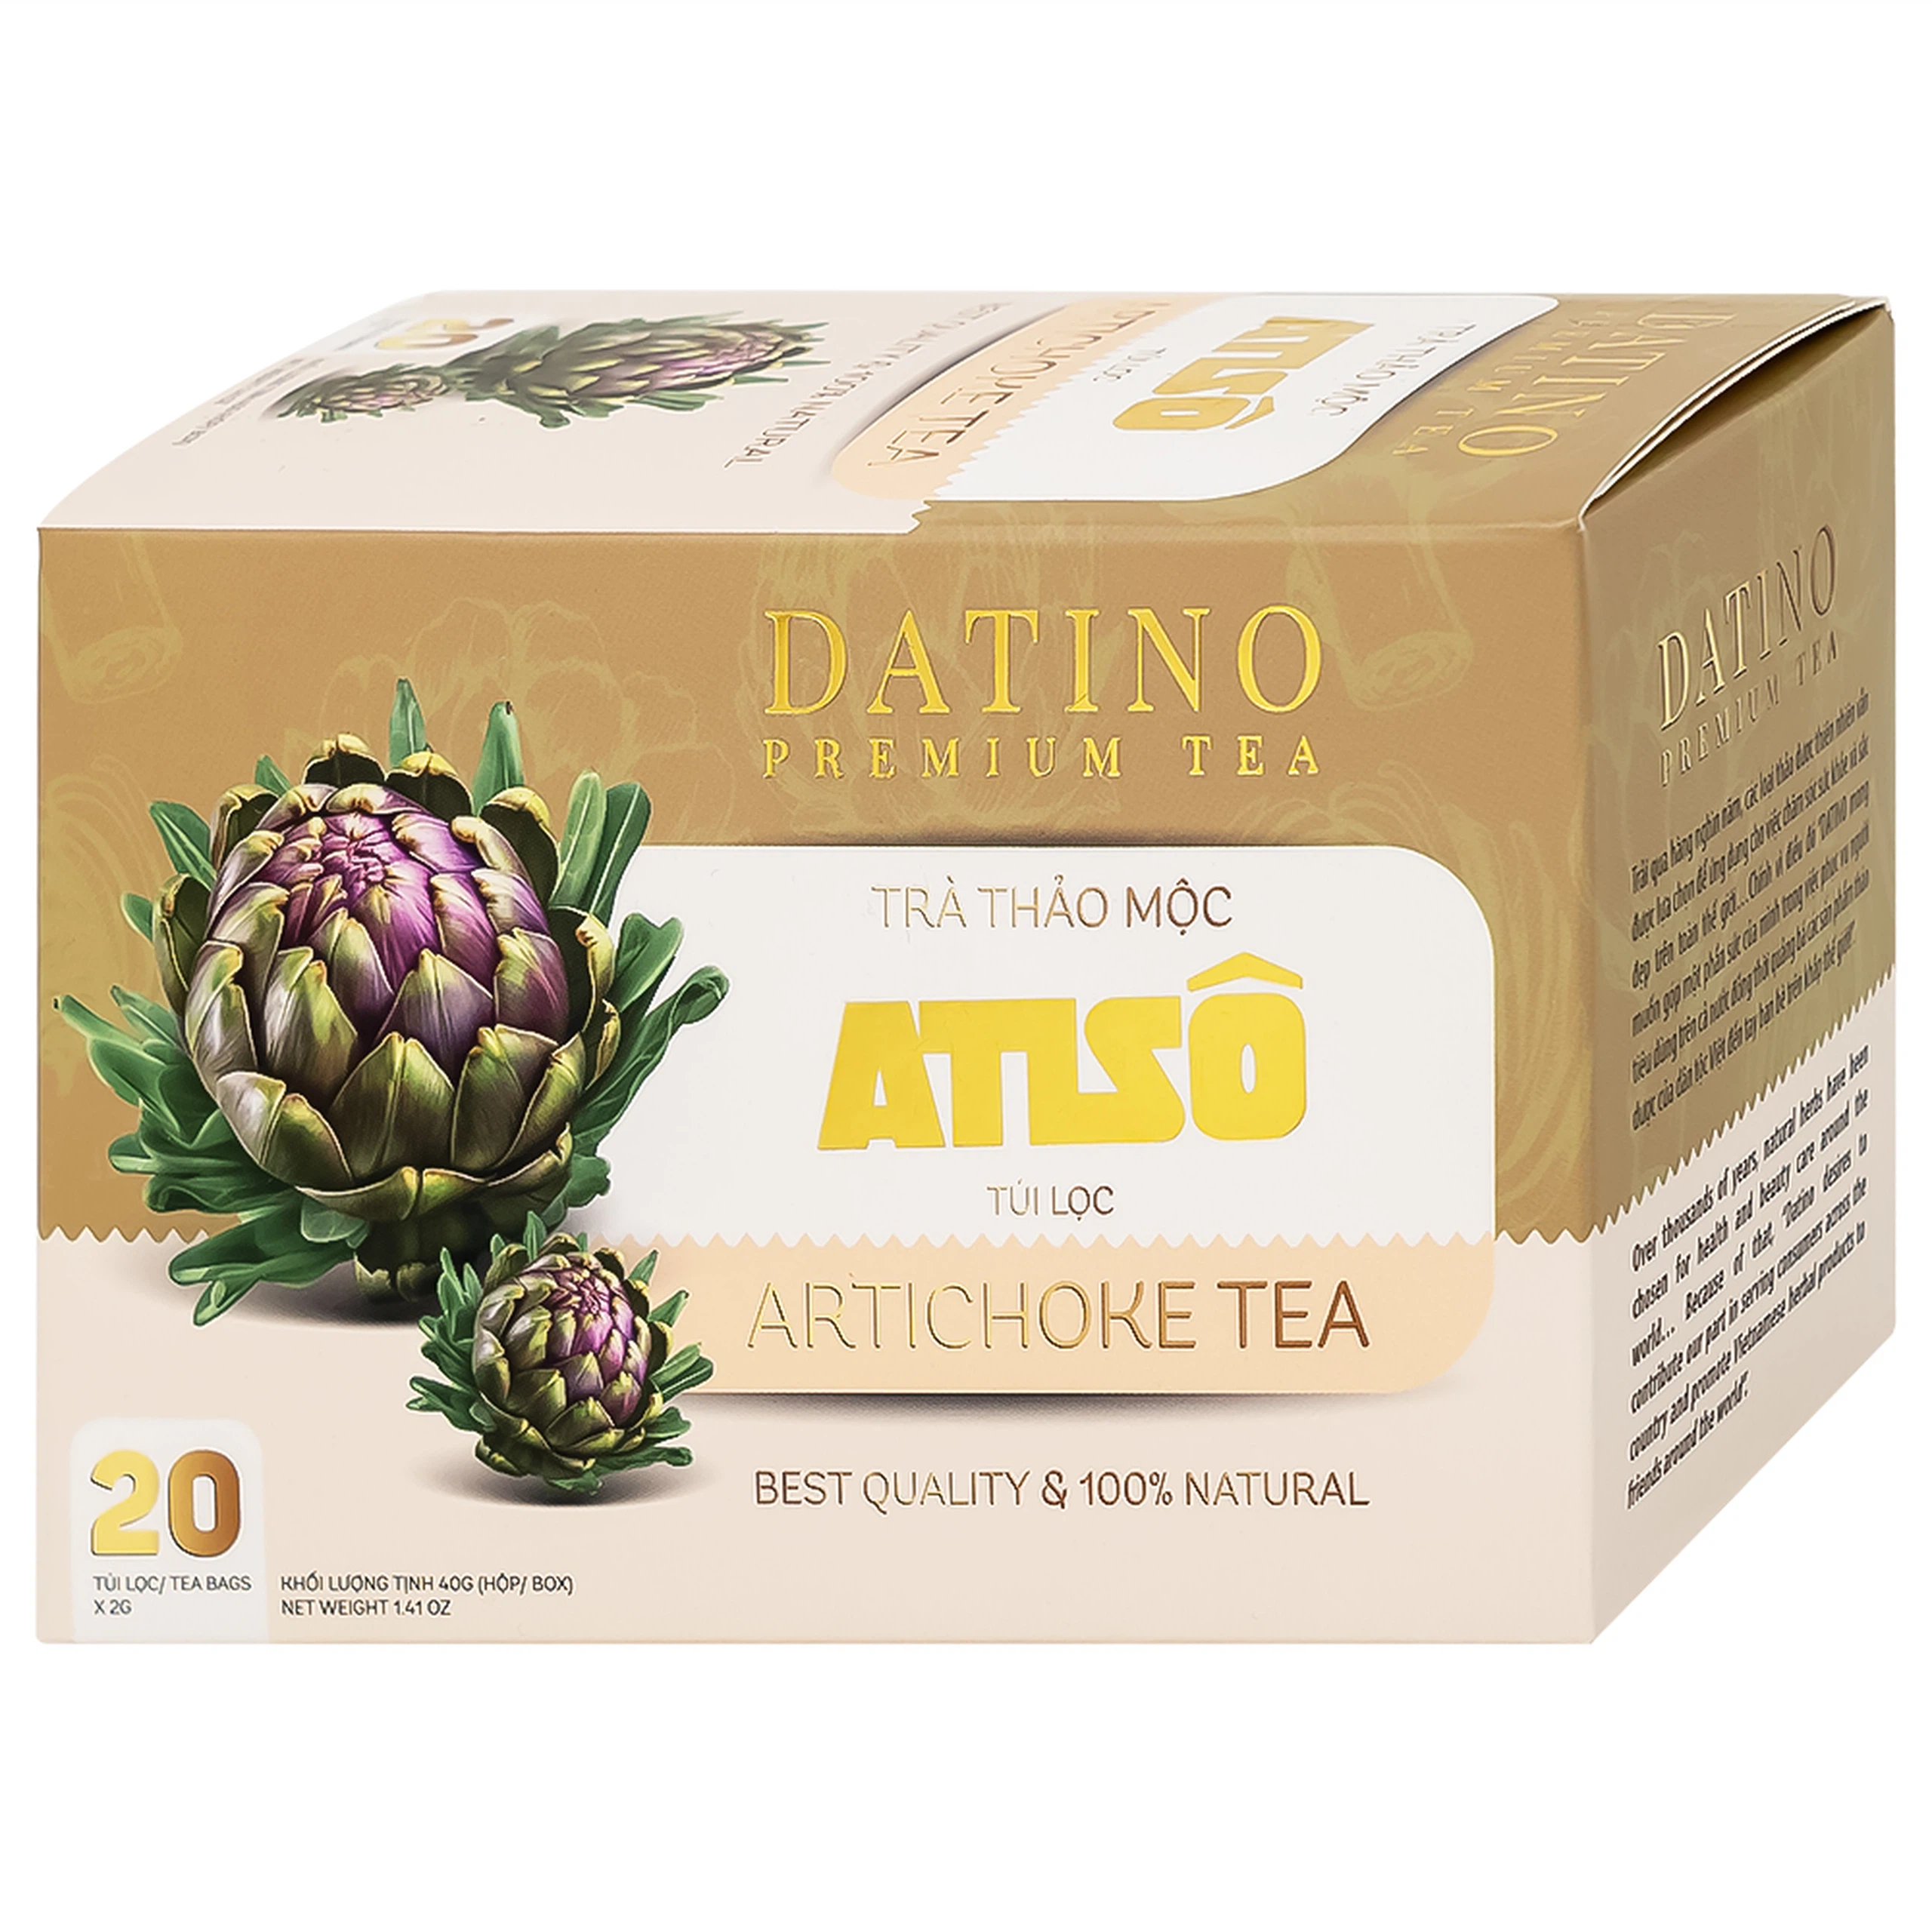 Trà thảo mộc Atiso Datino Premium Tea hỗ trợ giải độc gan, tăng cường chức năng gan (20 túi x 2g)